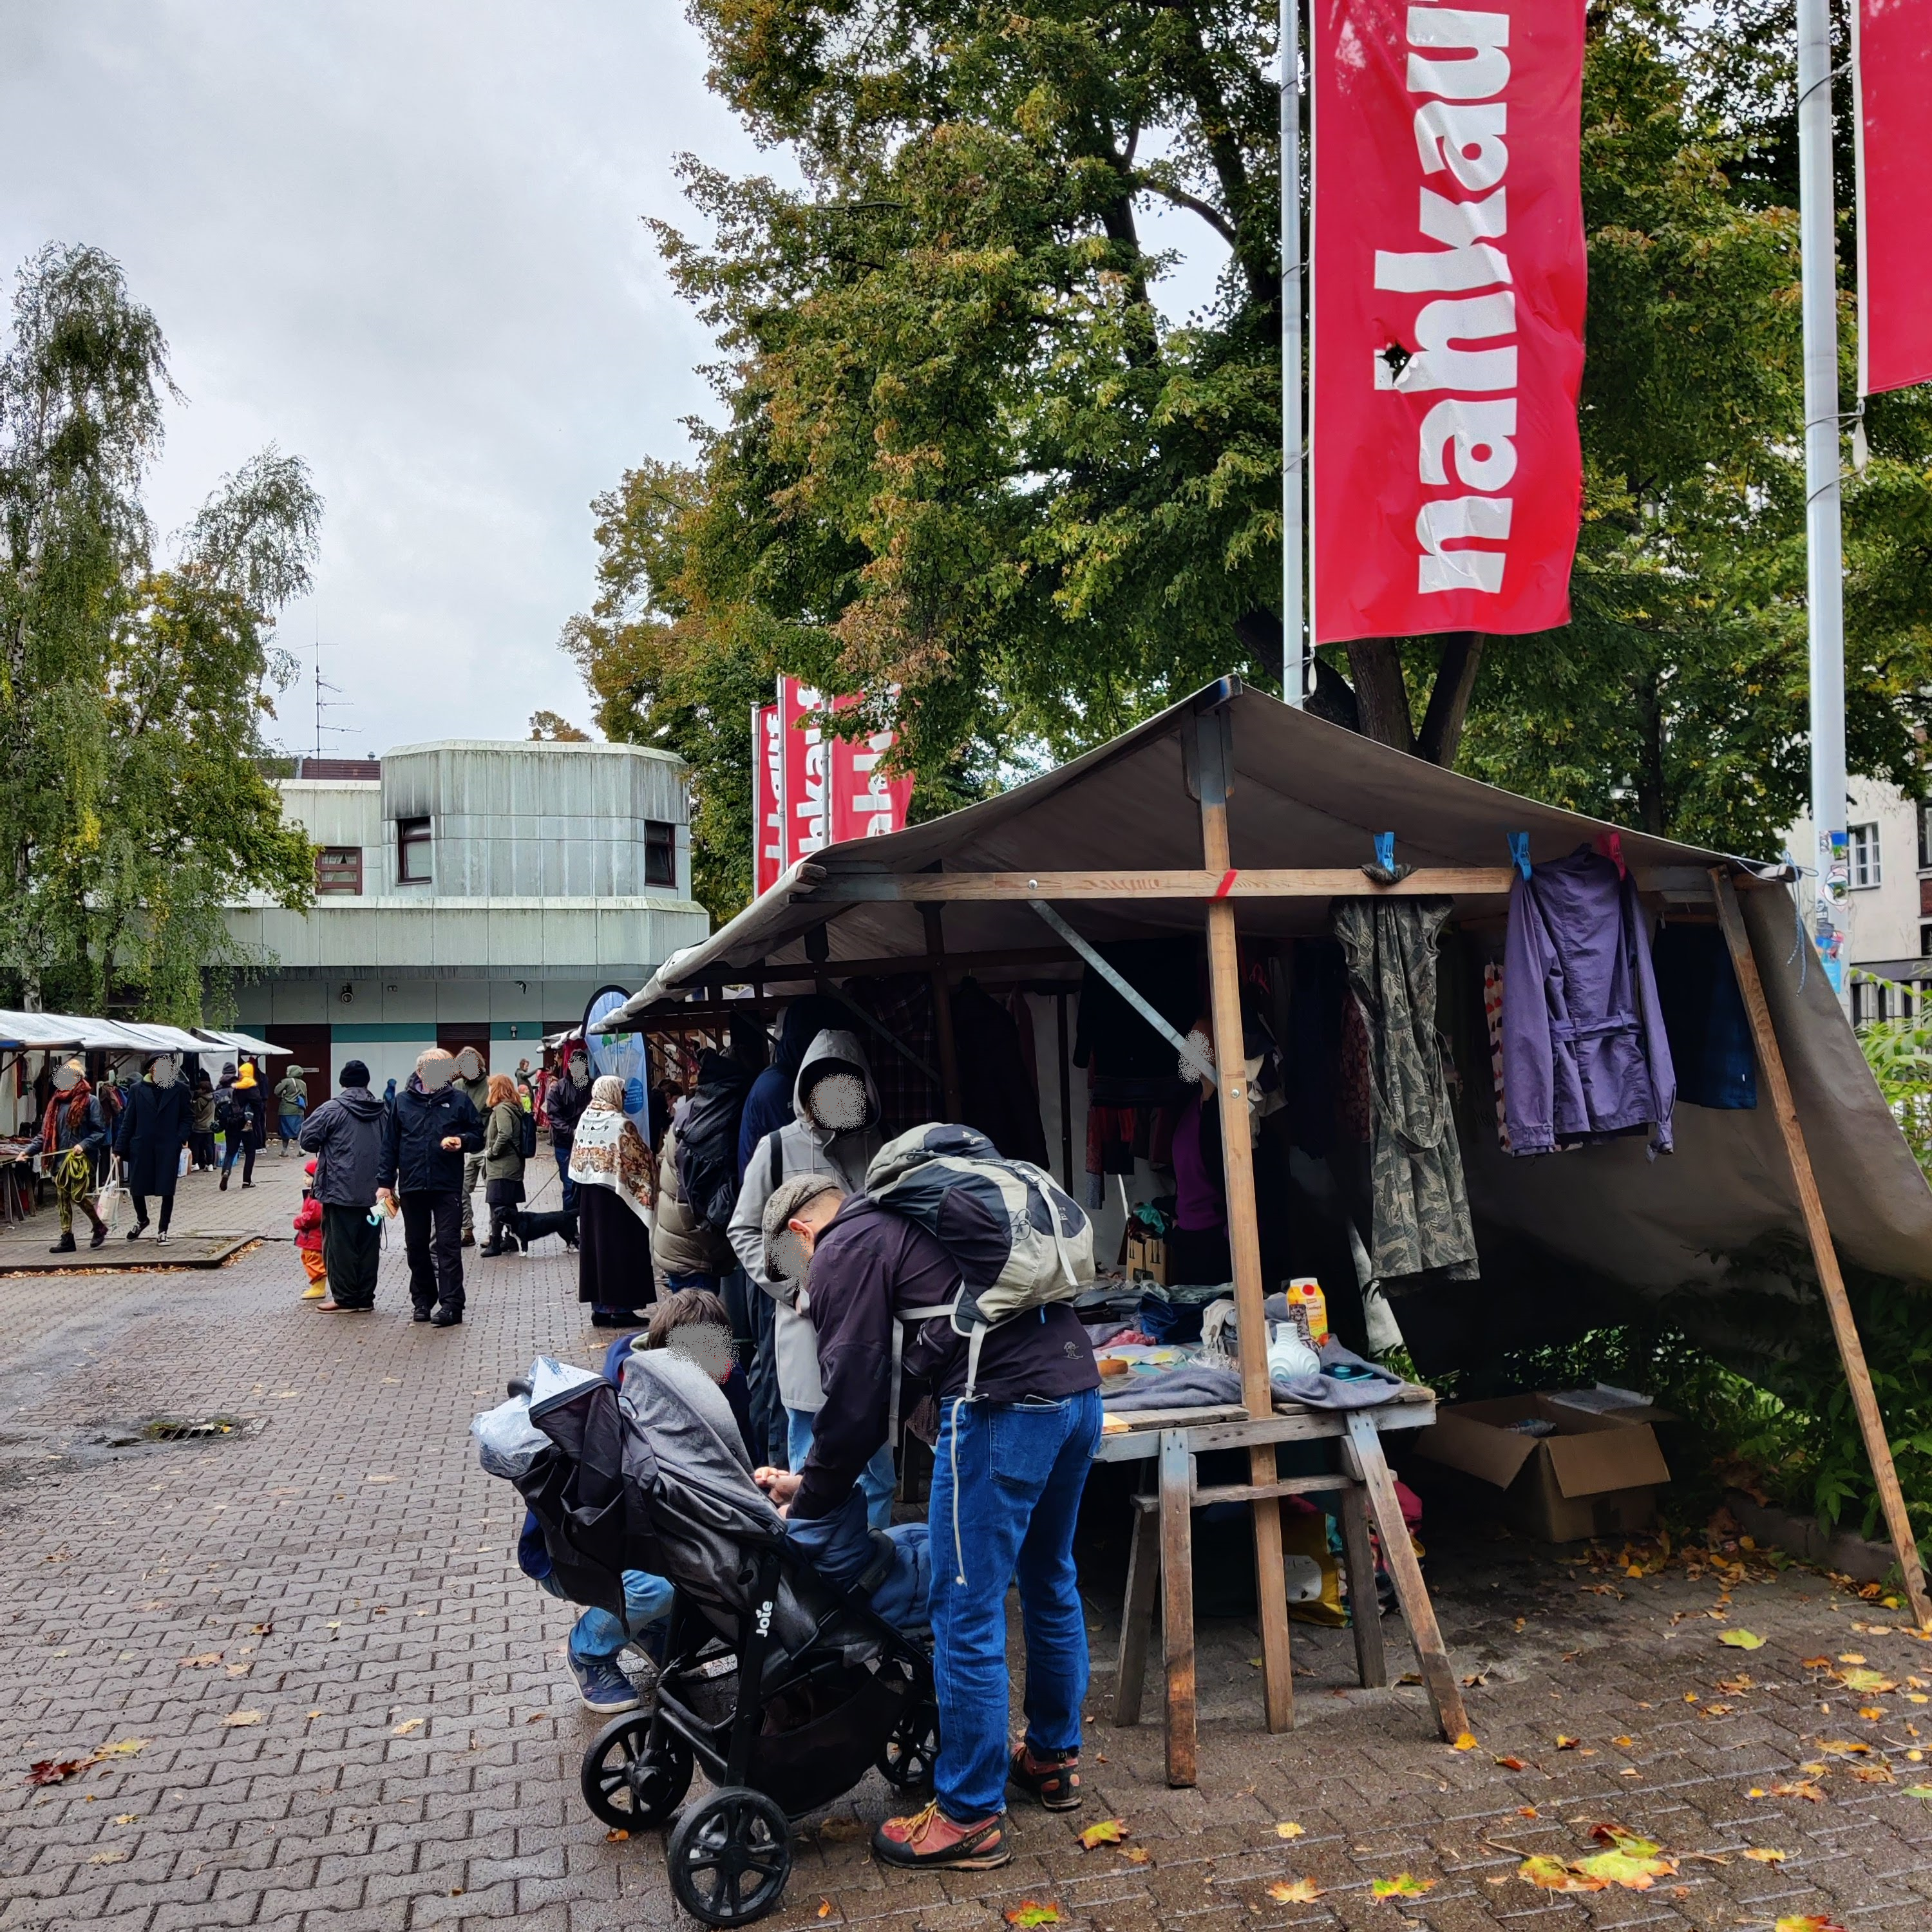 Trotz Wind und Wetter stöberten zahlreiche Anwohnende auf dem Kiezflohmarkt. (Bild: Birgit Leiß)